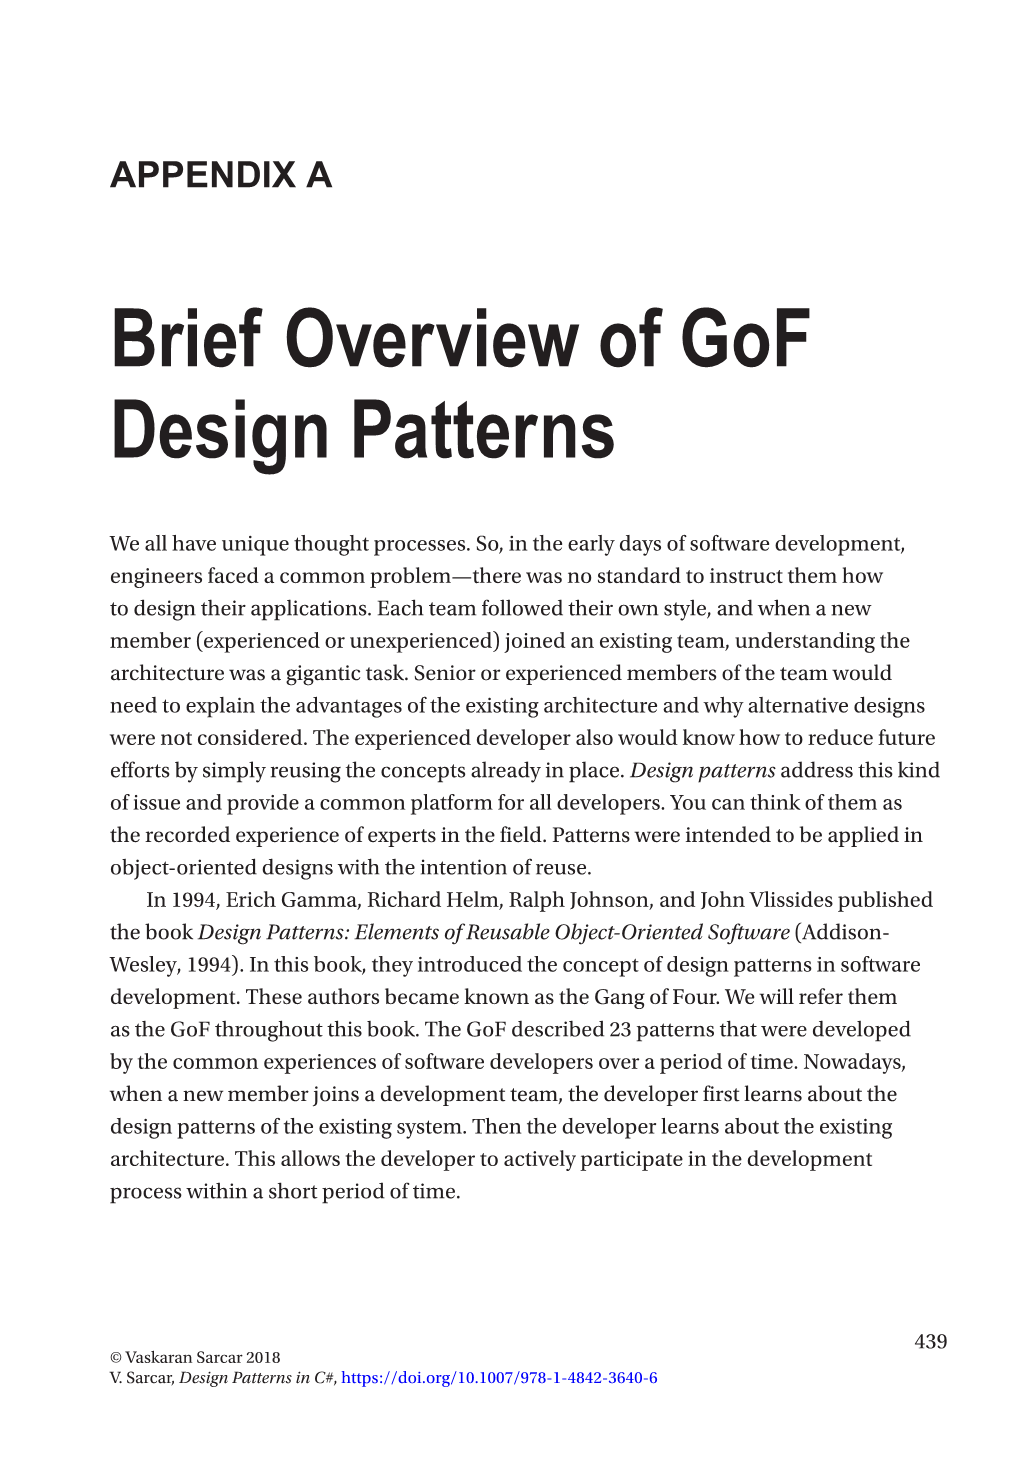 Brief Overview of Gof Design Patterns